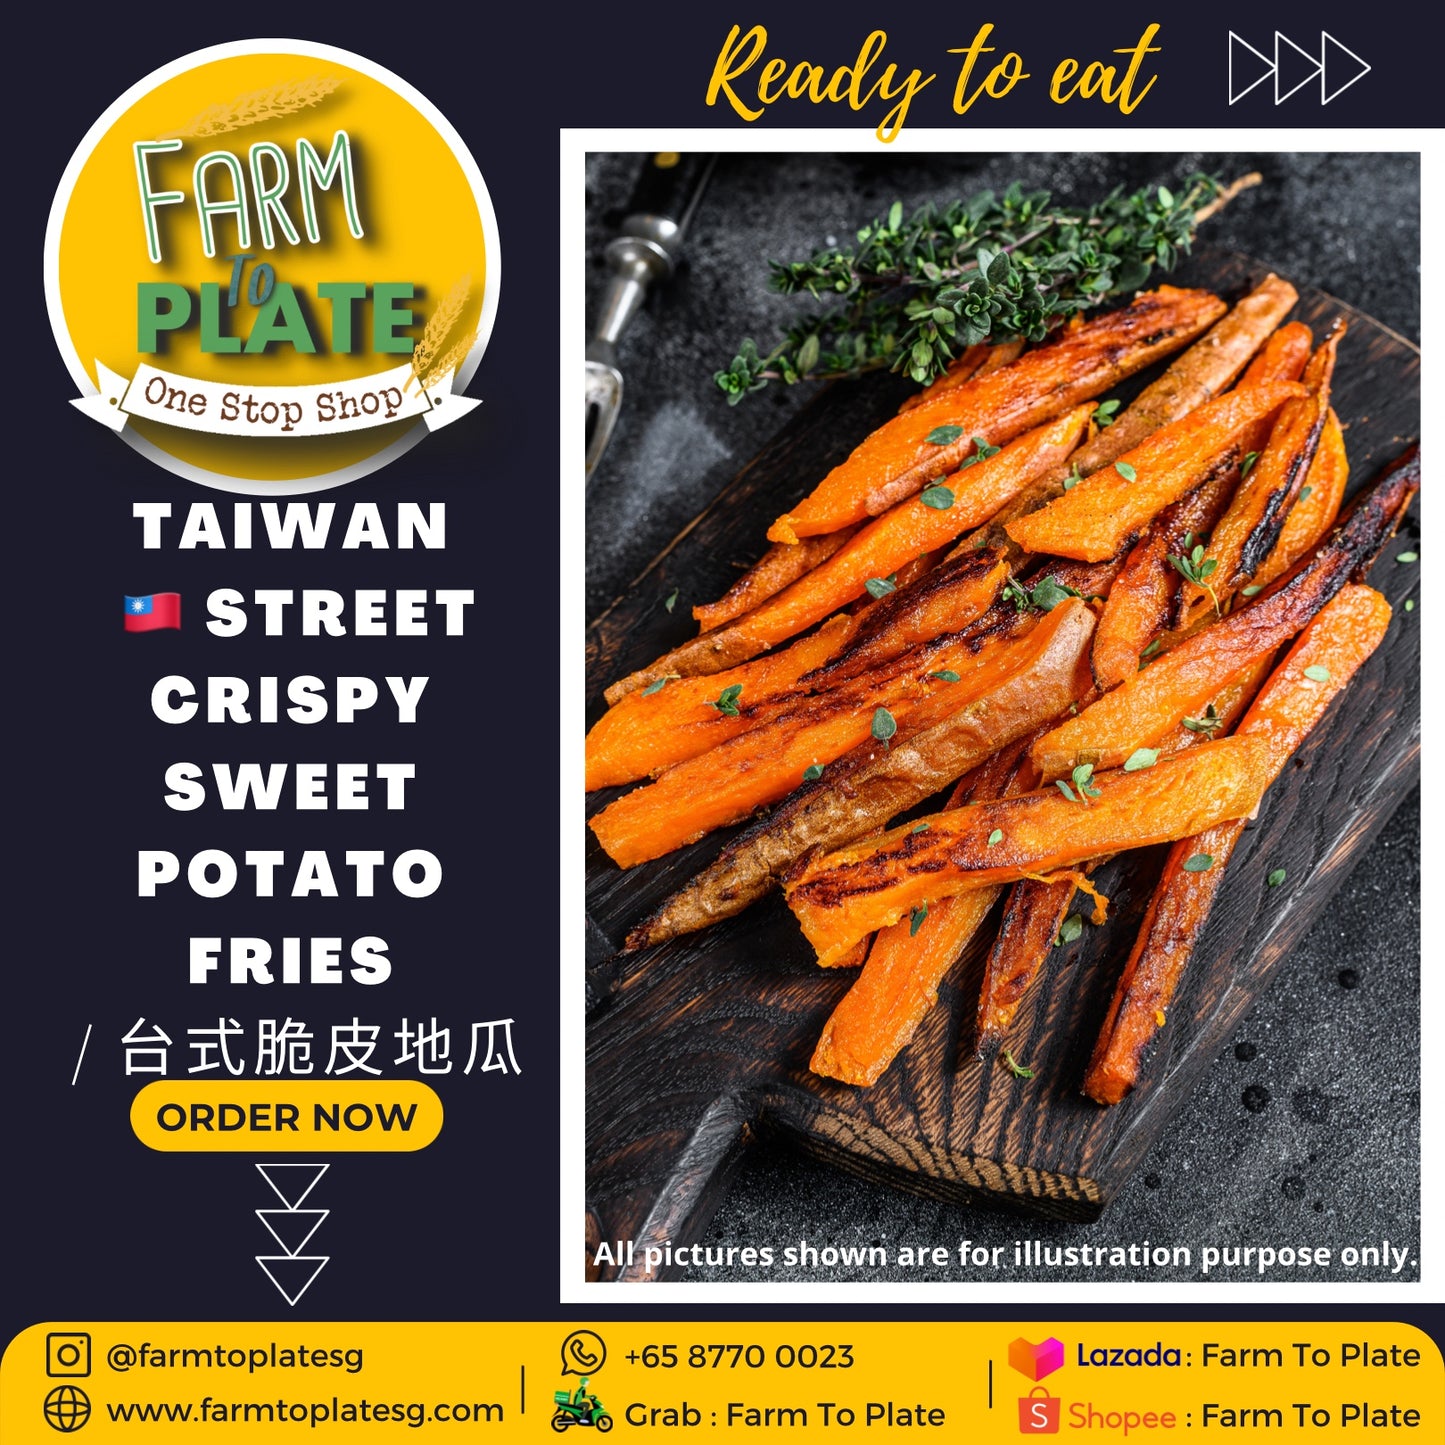 【FARM TO PLATE】Taiwan Street Crispy Sweet Potato Fries 400g / 台式脆皮地瓜